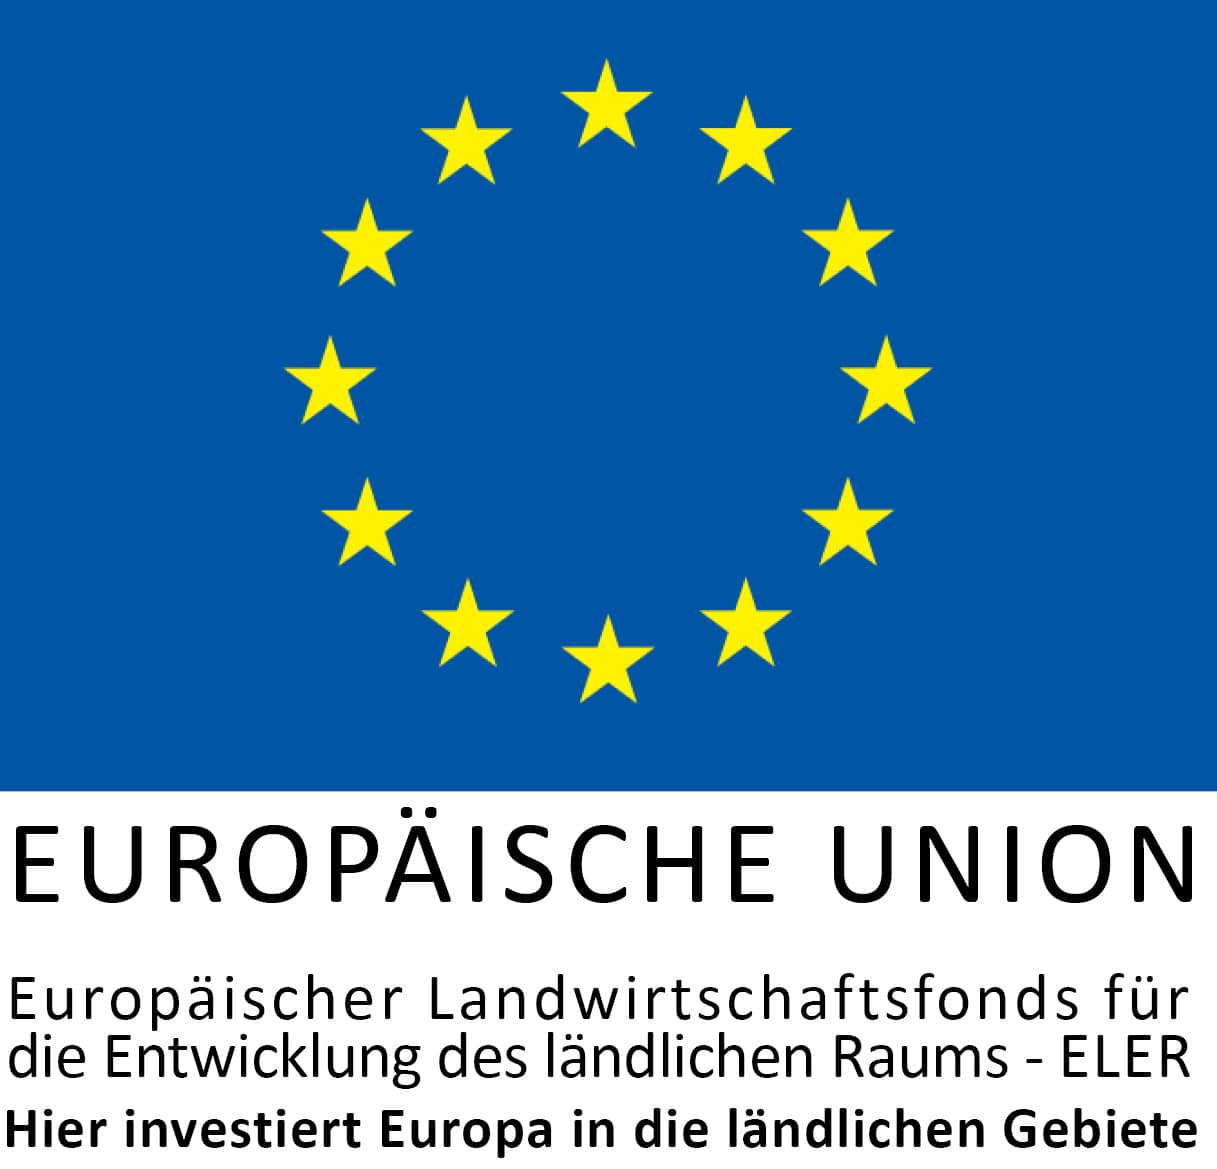 Europäische Union / ELER: hier investiert Europa in die ländlichen Gebiete